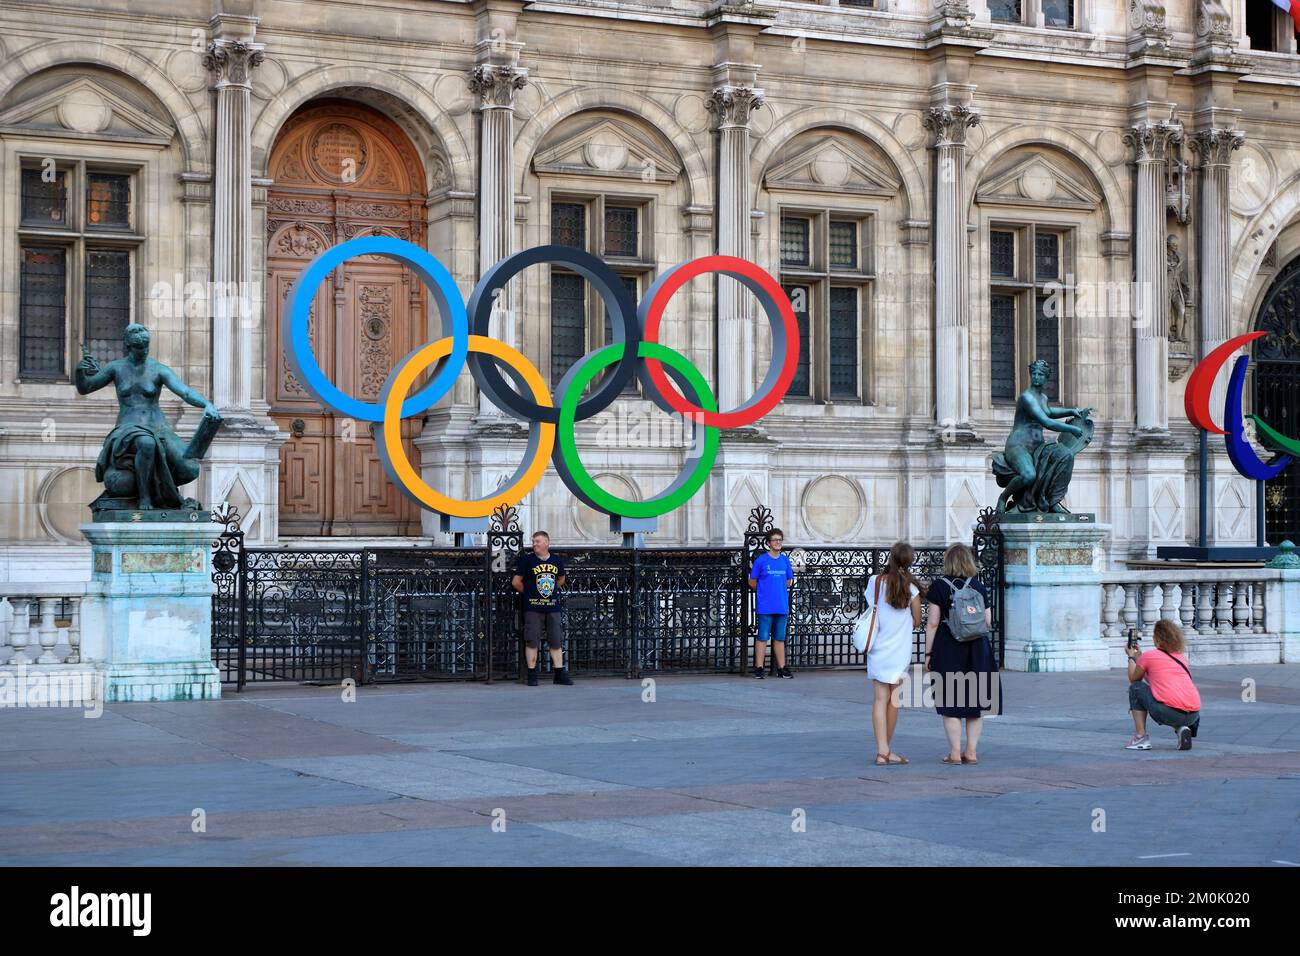 Drapeau des jeux olympiques de Paris 2024 accroché à la tour